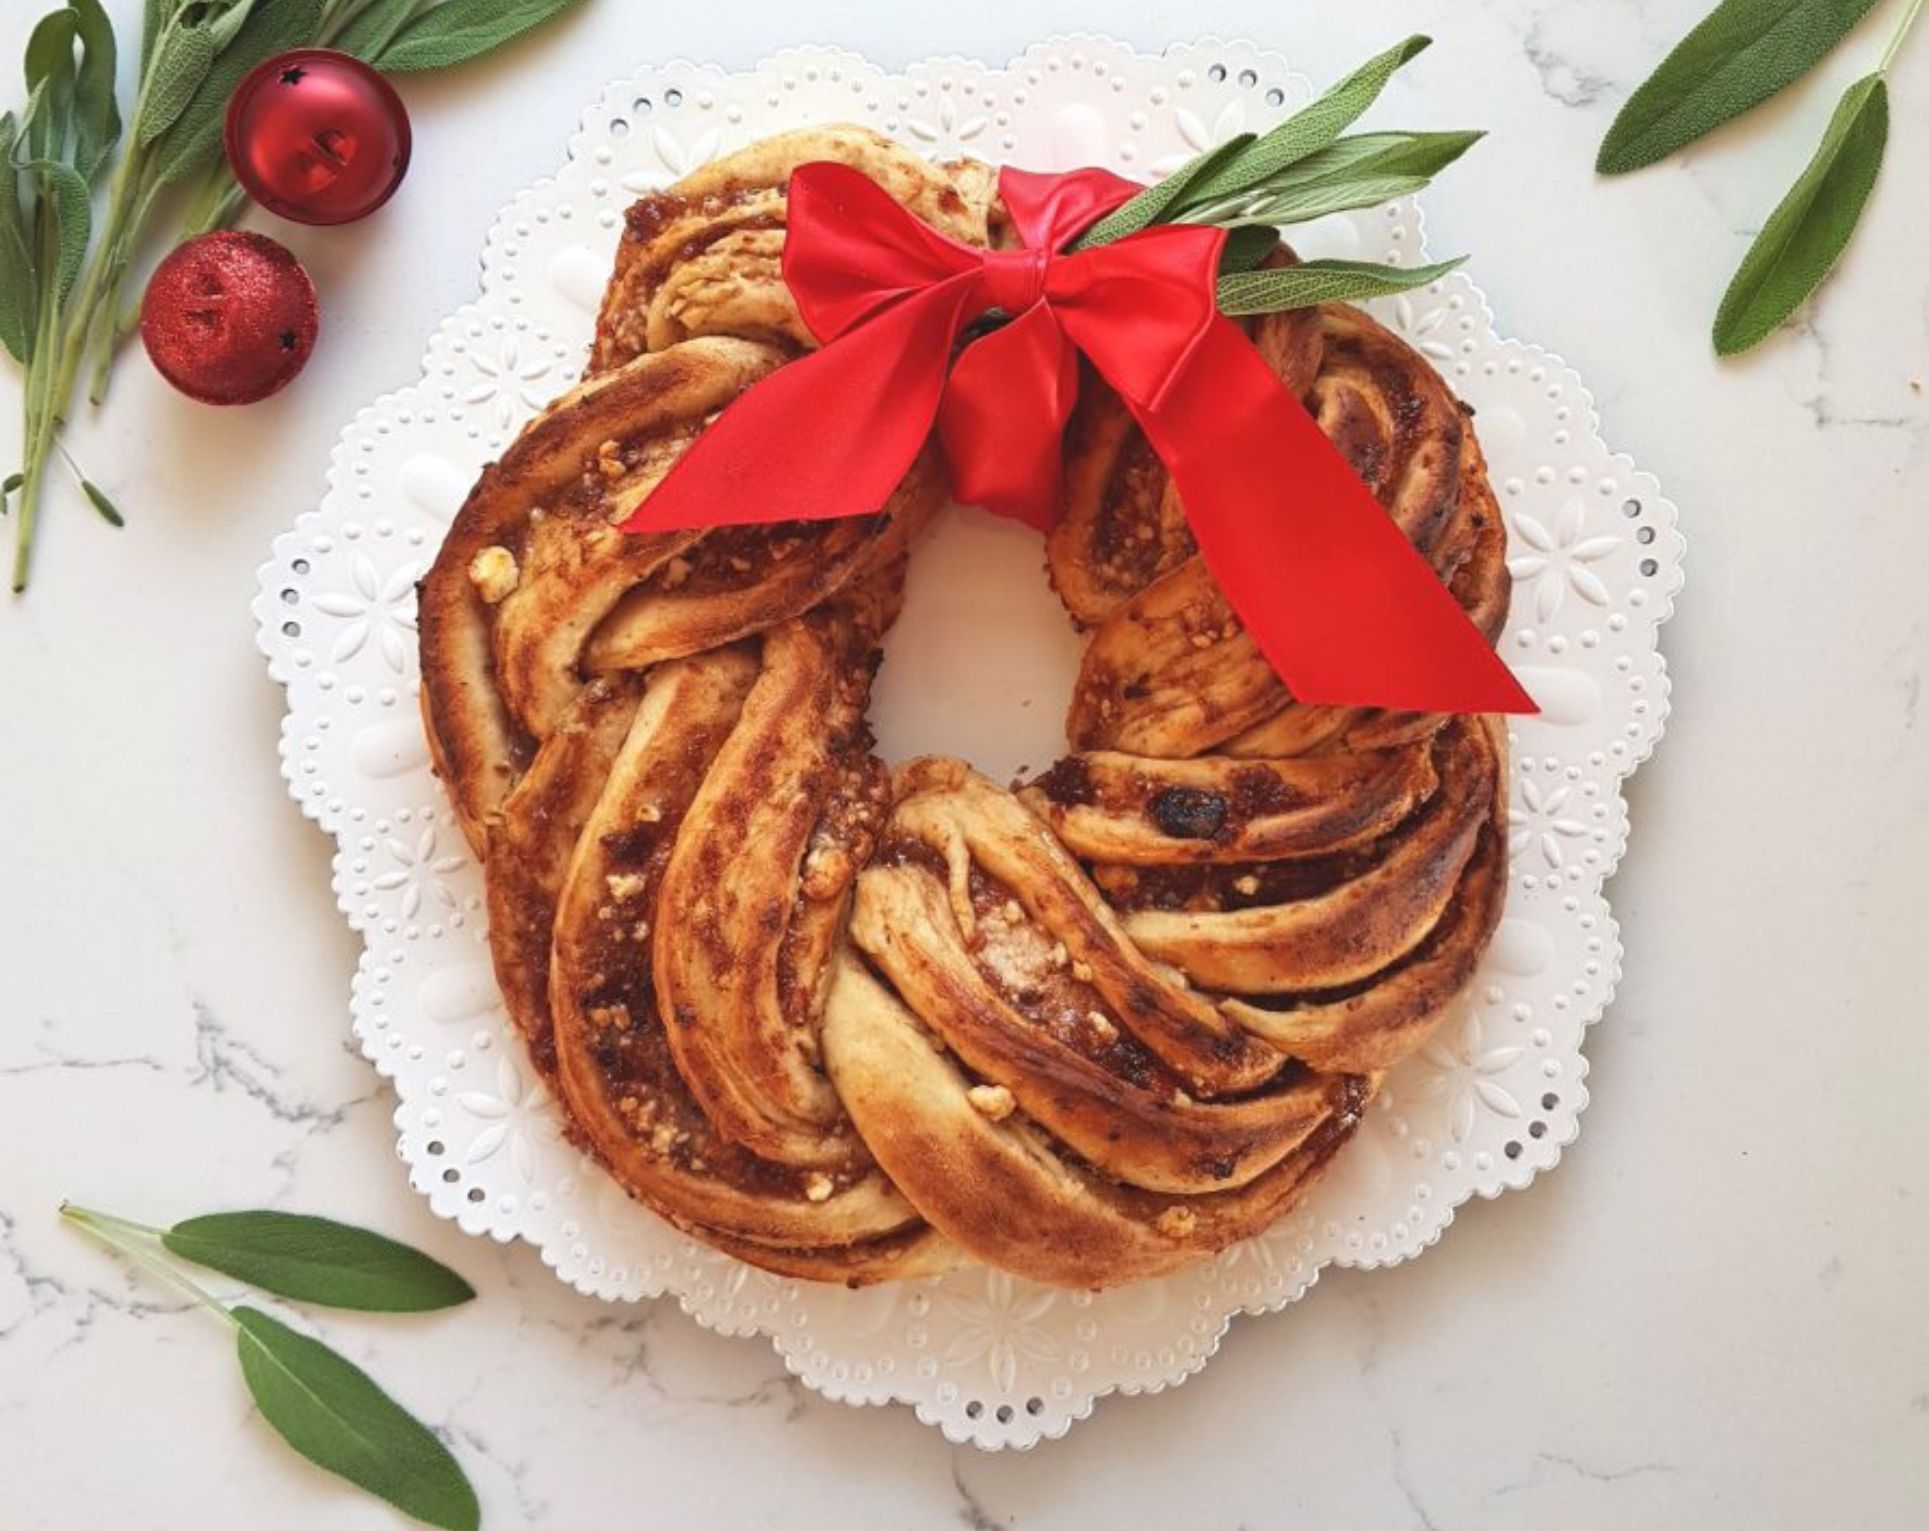 Plum, Chilli & Feta Wreath Bread